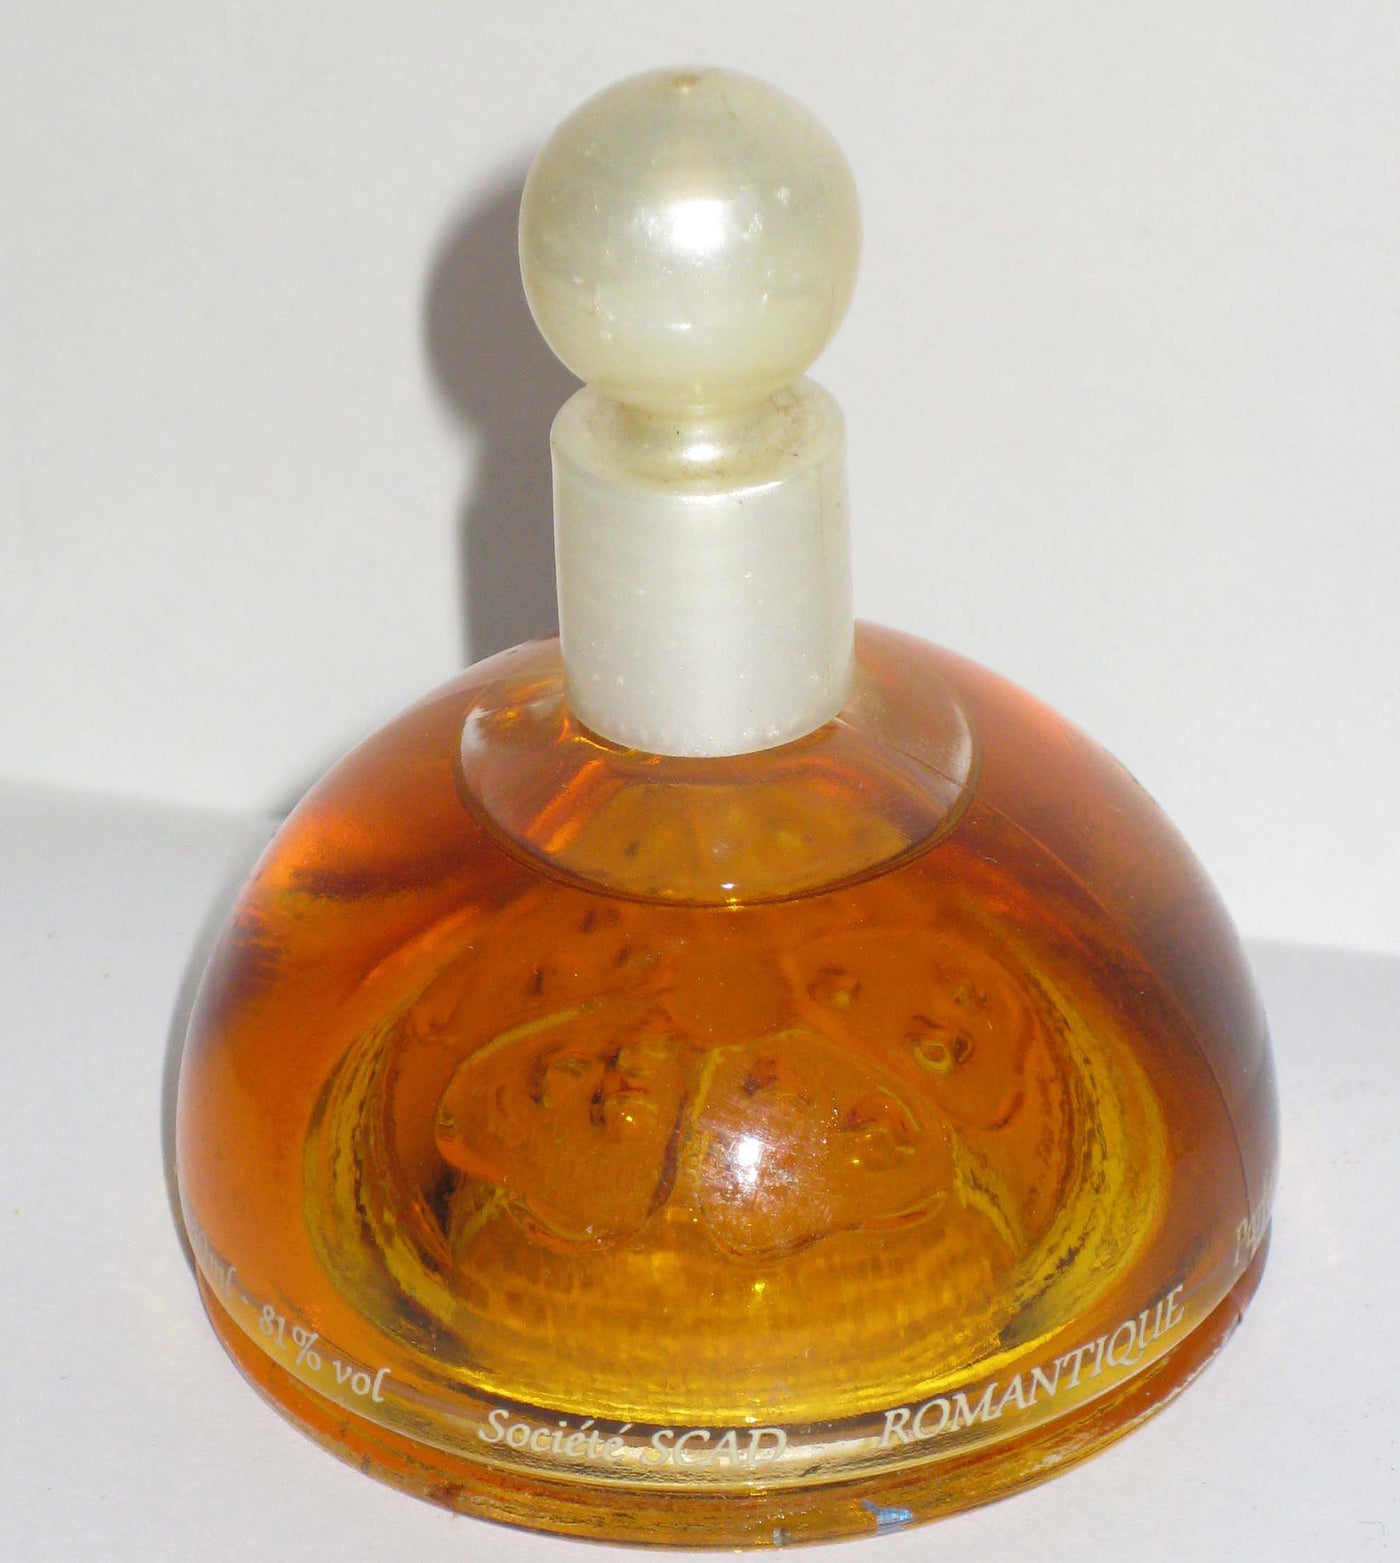 Vintage Romantique Parfum By C'est